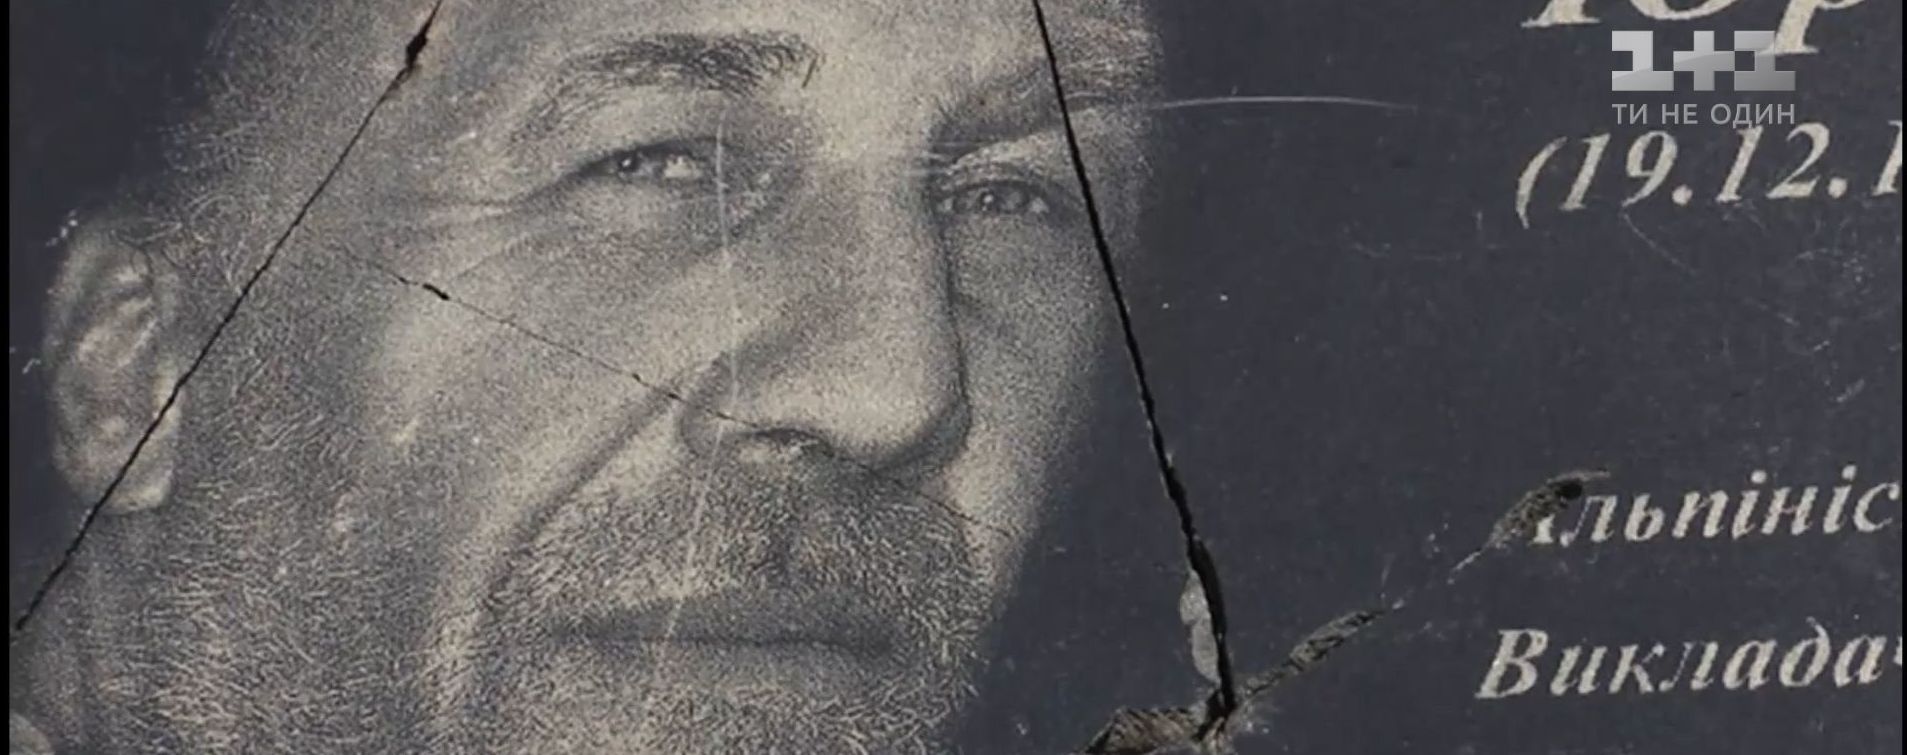 В Житомирской области вандалы разбили мемориальную доску АТОвцю, установленную на скалы